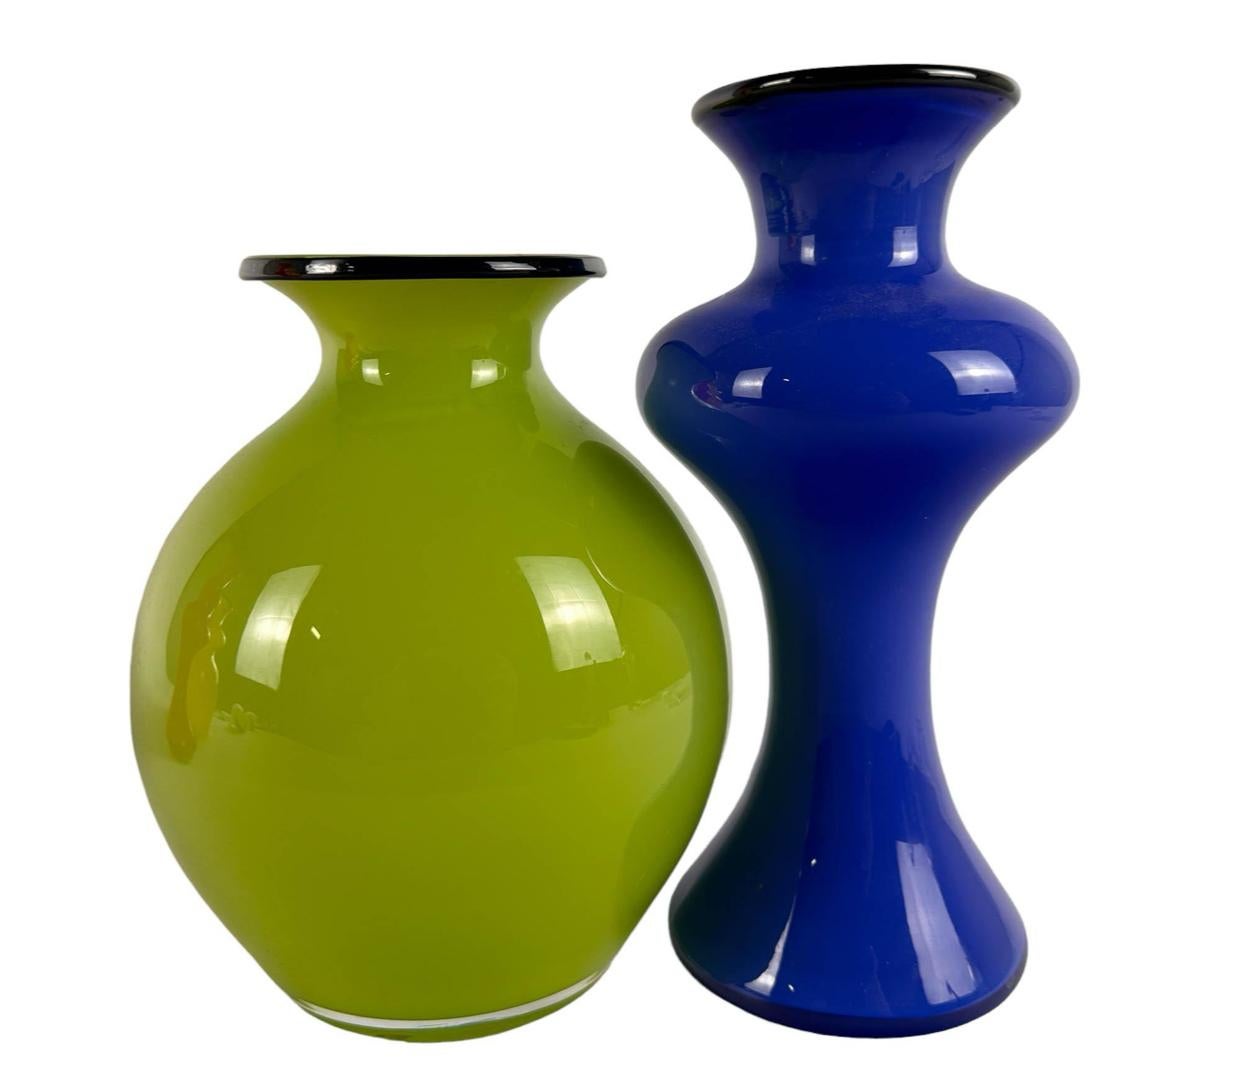 Collection de quatre carafes en verre d'art vintage du Design Studio/One suédois Strombergshyttan. Les couleurs comprennent le verre jaune, le vert, le bleu et le rouge, chacun ayant un anneau de verre noir autour de la lèvre supérieure. Il n'y a